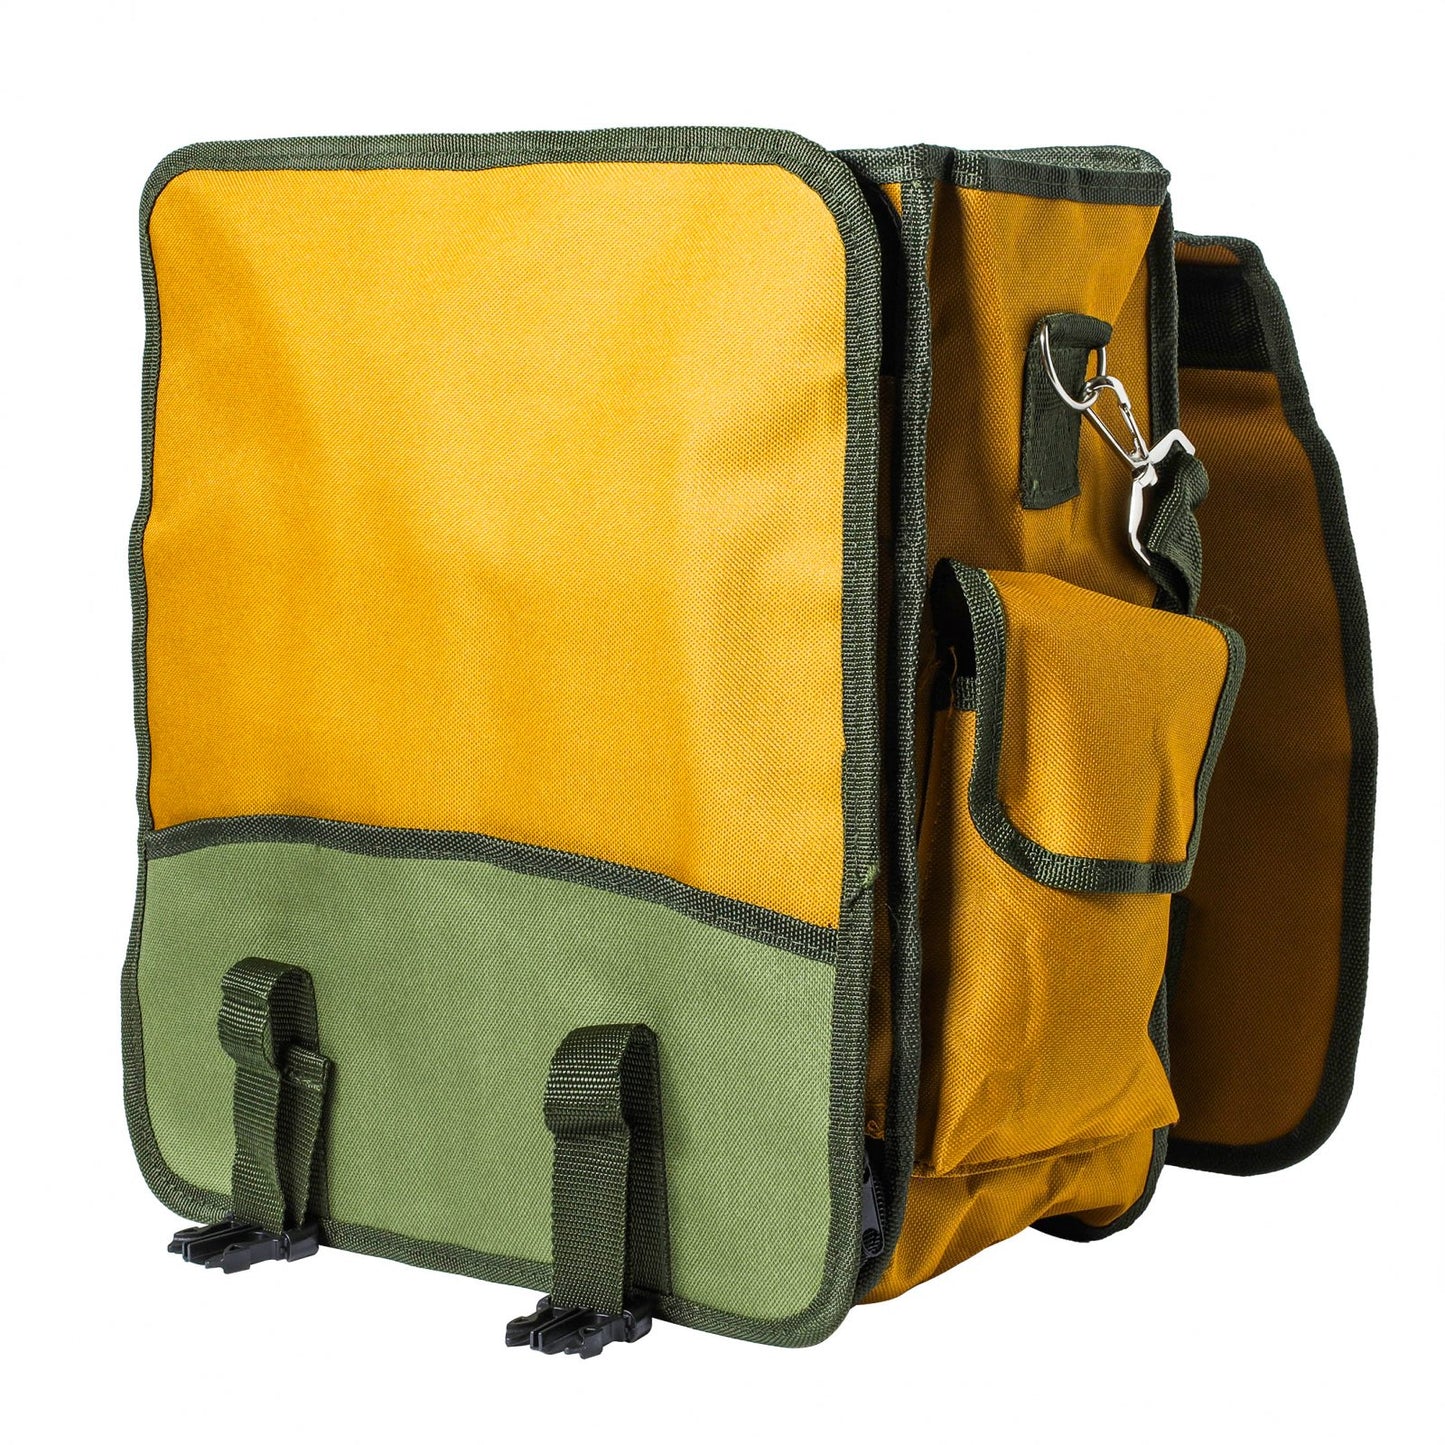 13 Pocket Musette Shoulder Bag for Rock Hounding or Metal Detecting